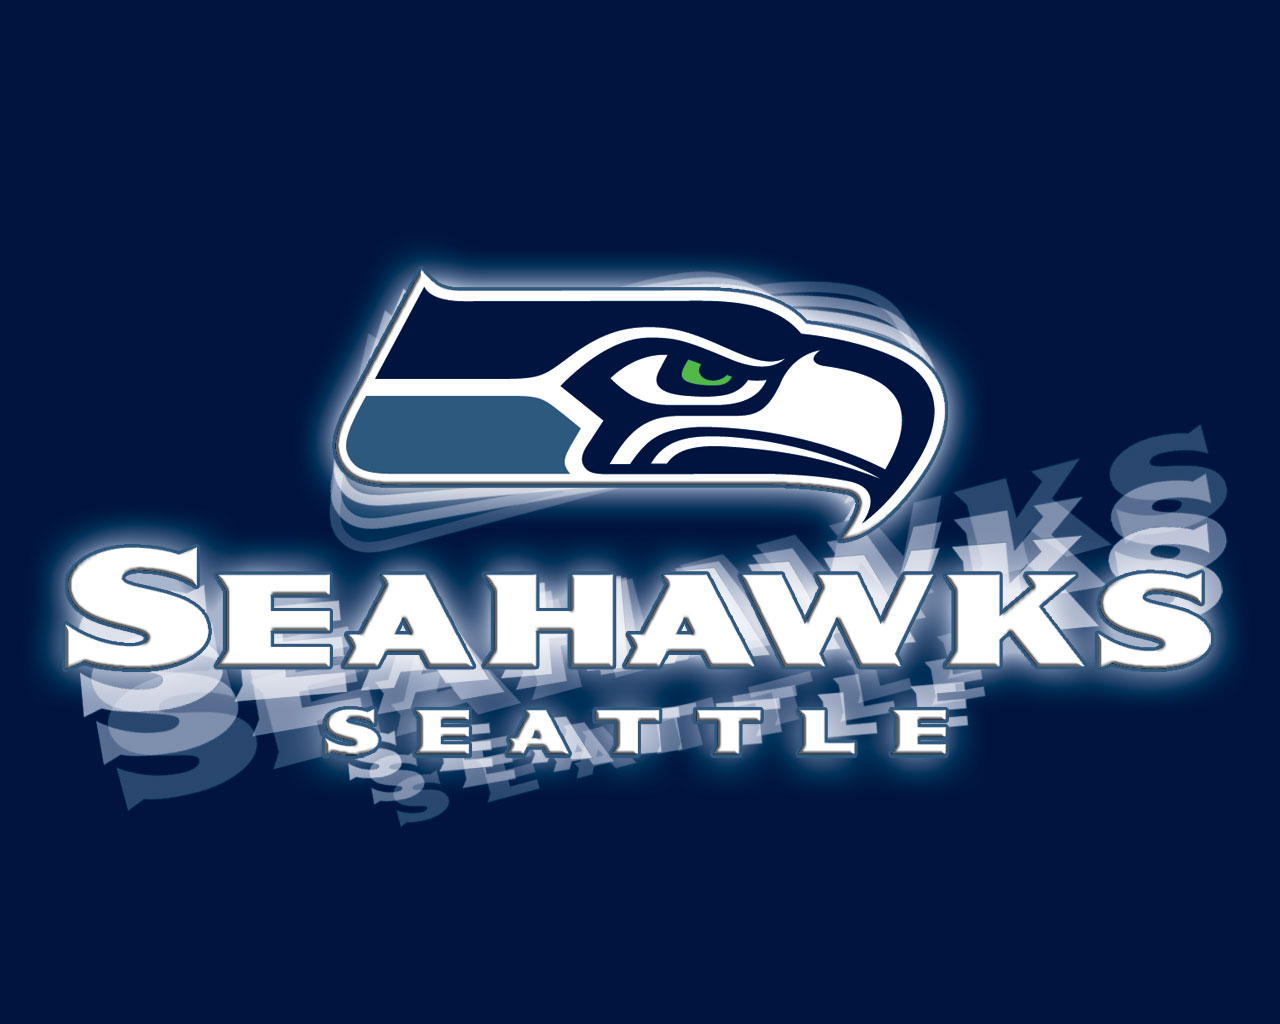  Seattle Seahawks Free Wallpaper 1280x1024 Full HD Wallpapers